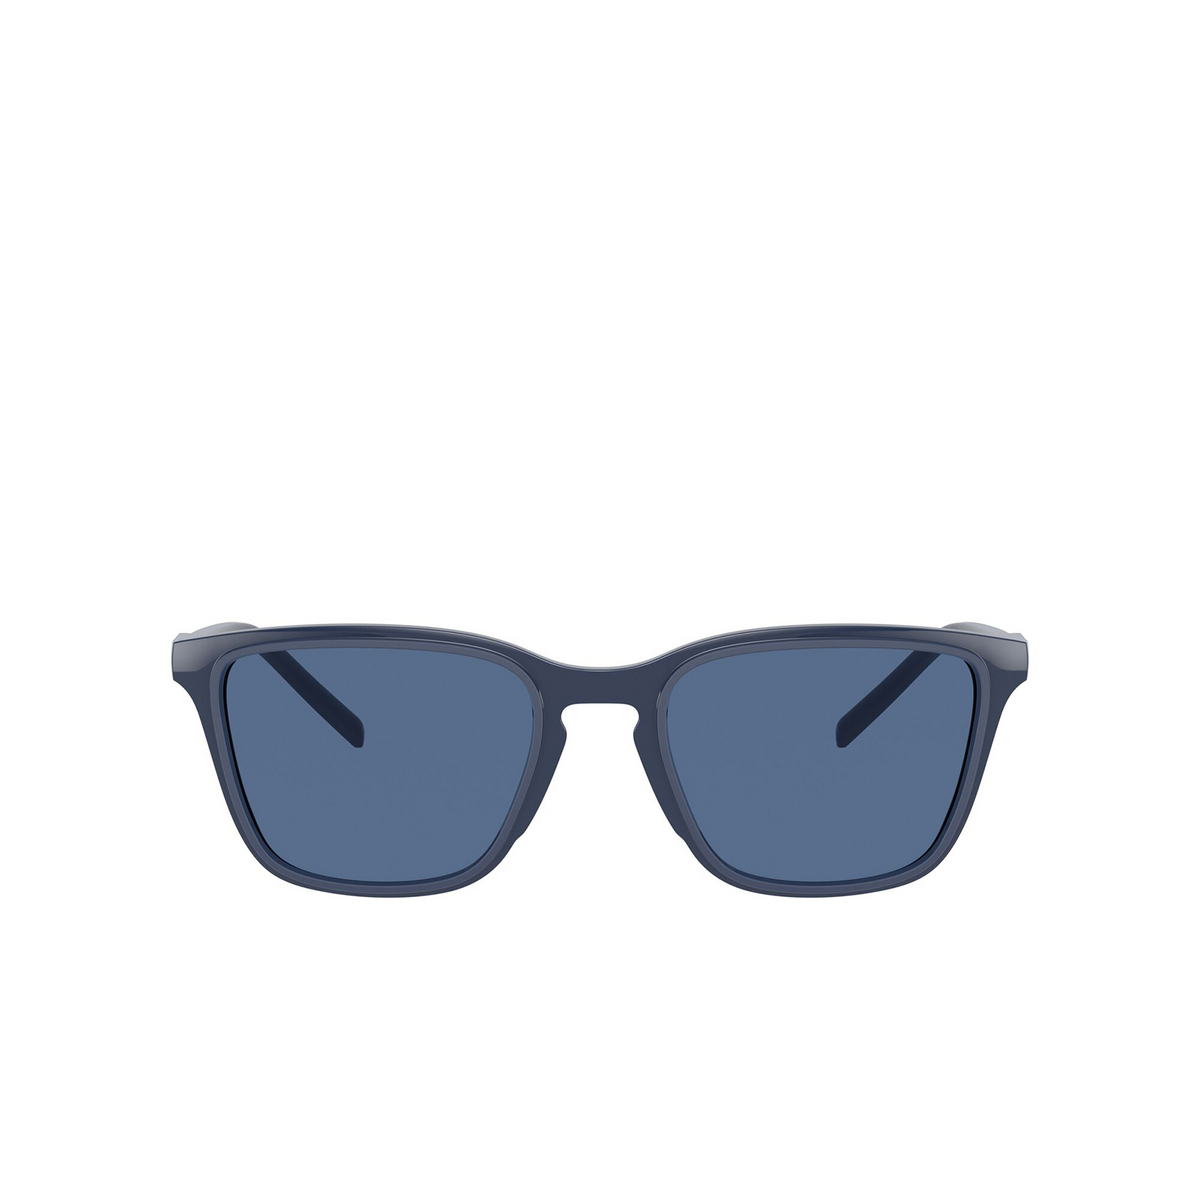 Dolce & Gabbana DG6145 Sunglasses 329480 Blue - front view